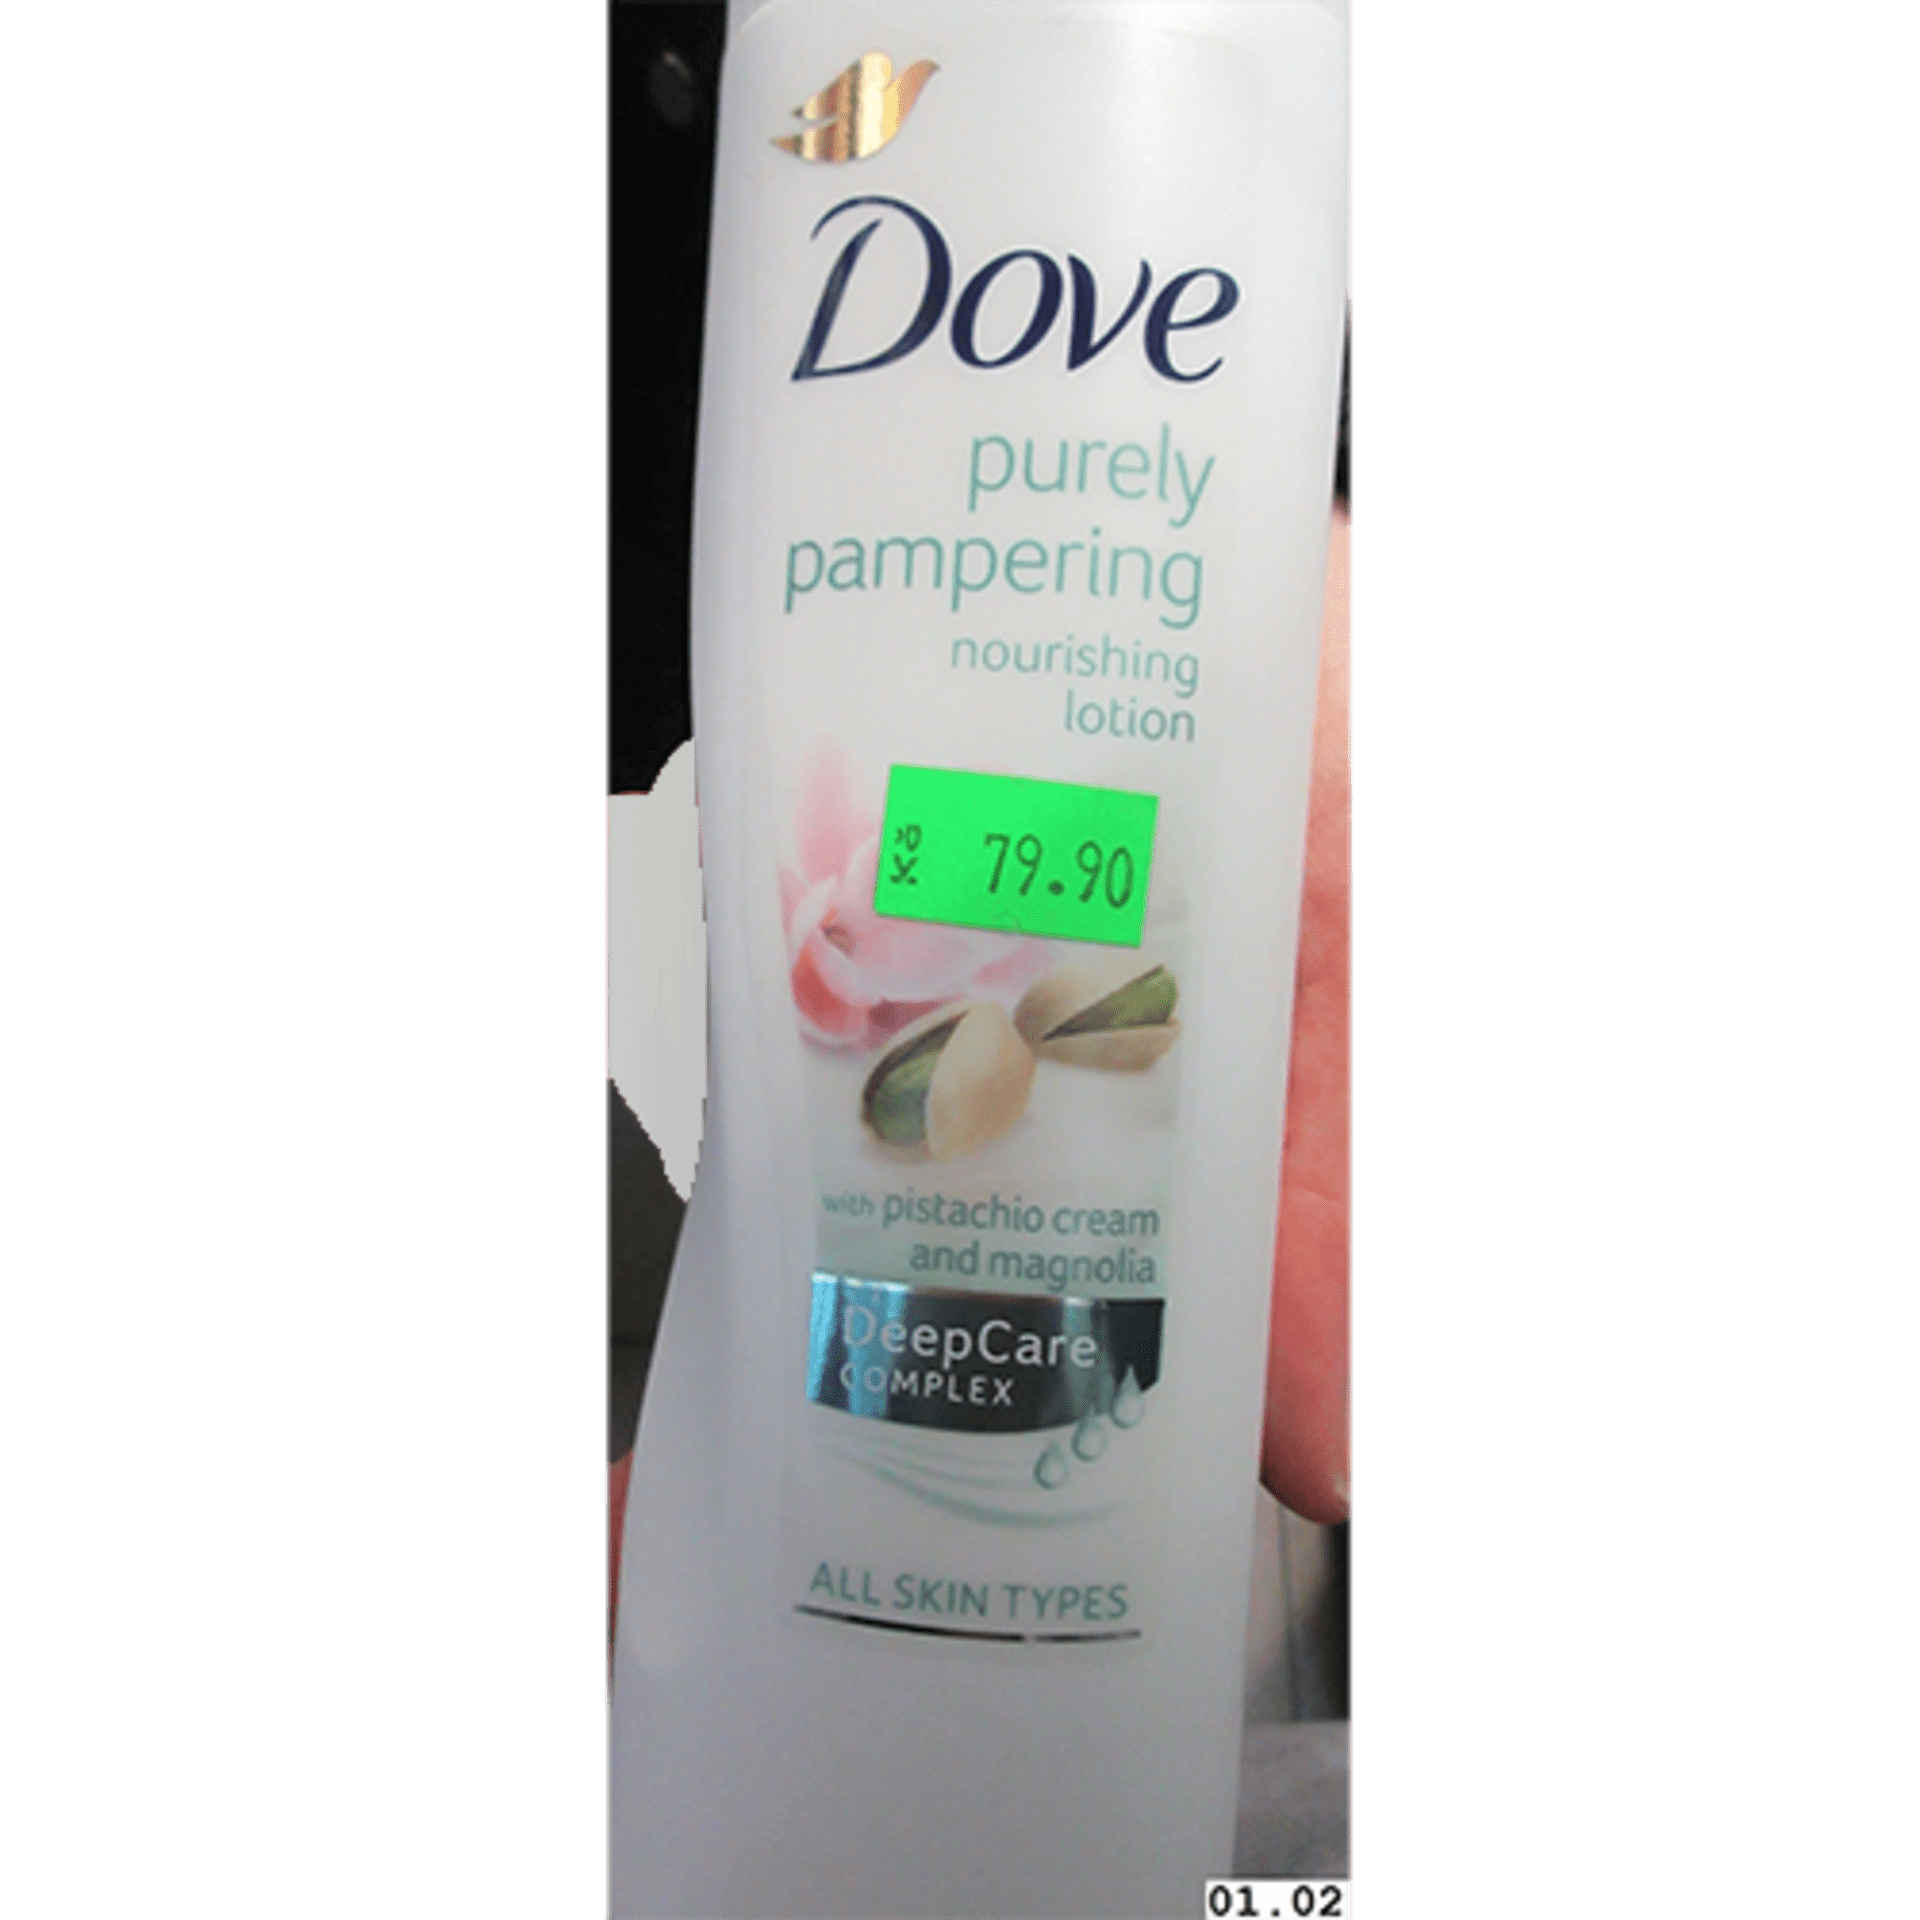 Látka je v tělovém mléku Dove s čárovým kódem 8712561387002, které je původem z Velké Británie.